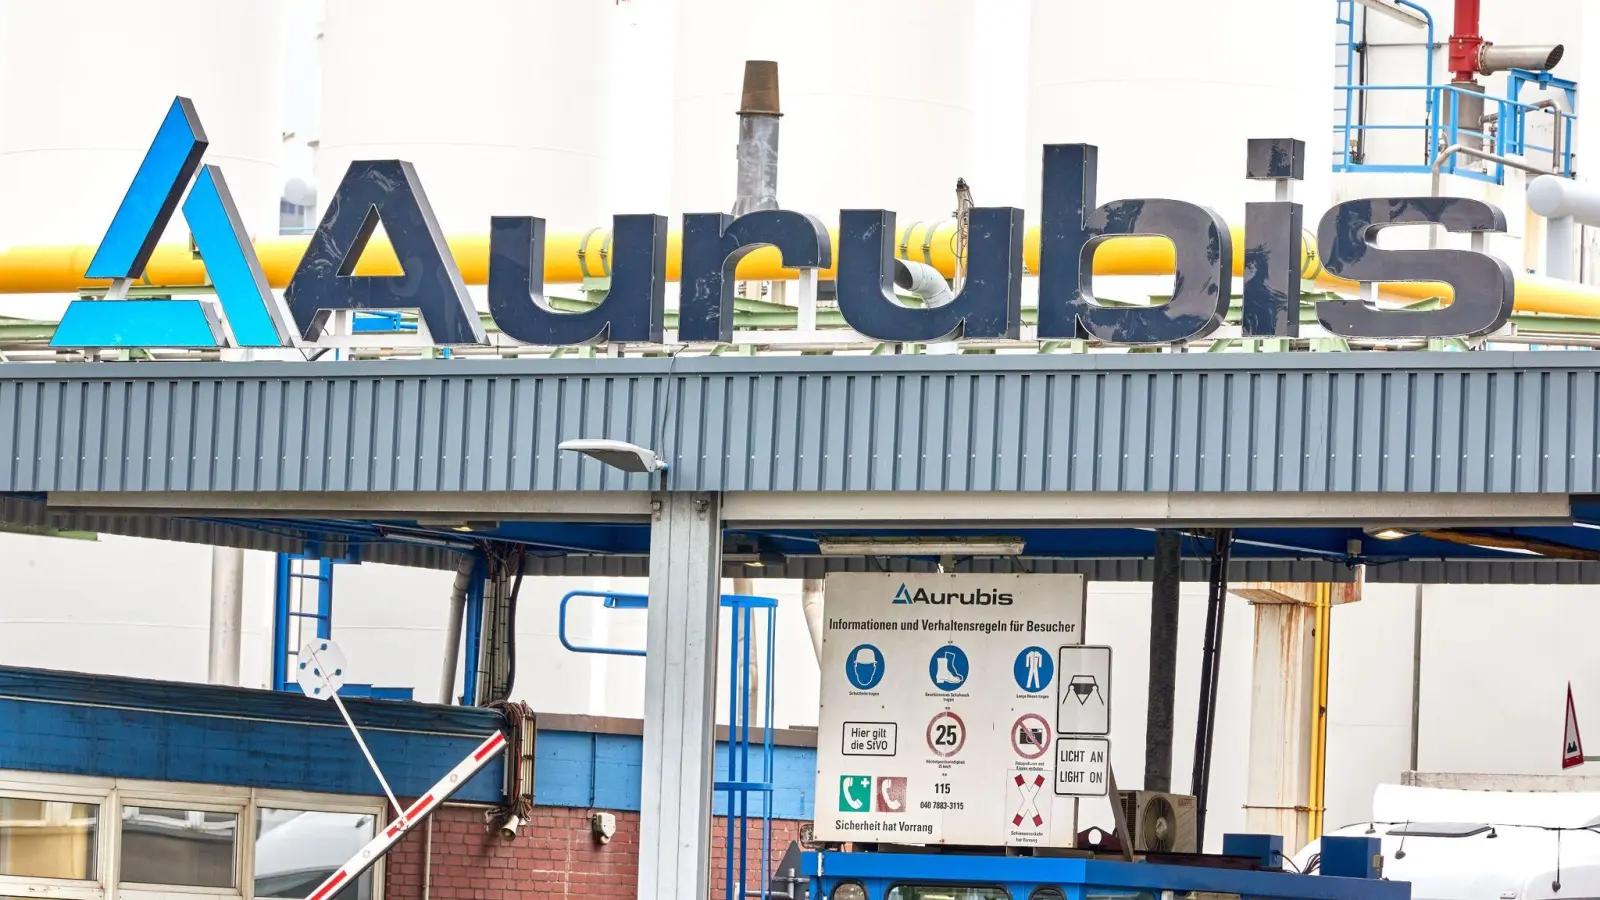 Beim Recyclingspezialisten Aurubis in Hamburg ist es erneut zu Metall-Diebstählen gekommen. (Foto: Georg Wendt/dpa)